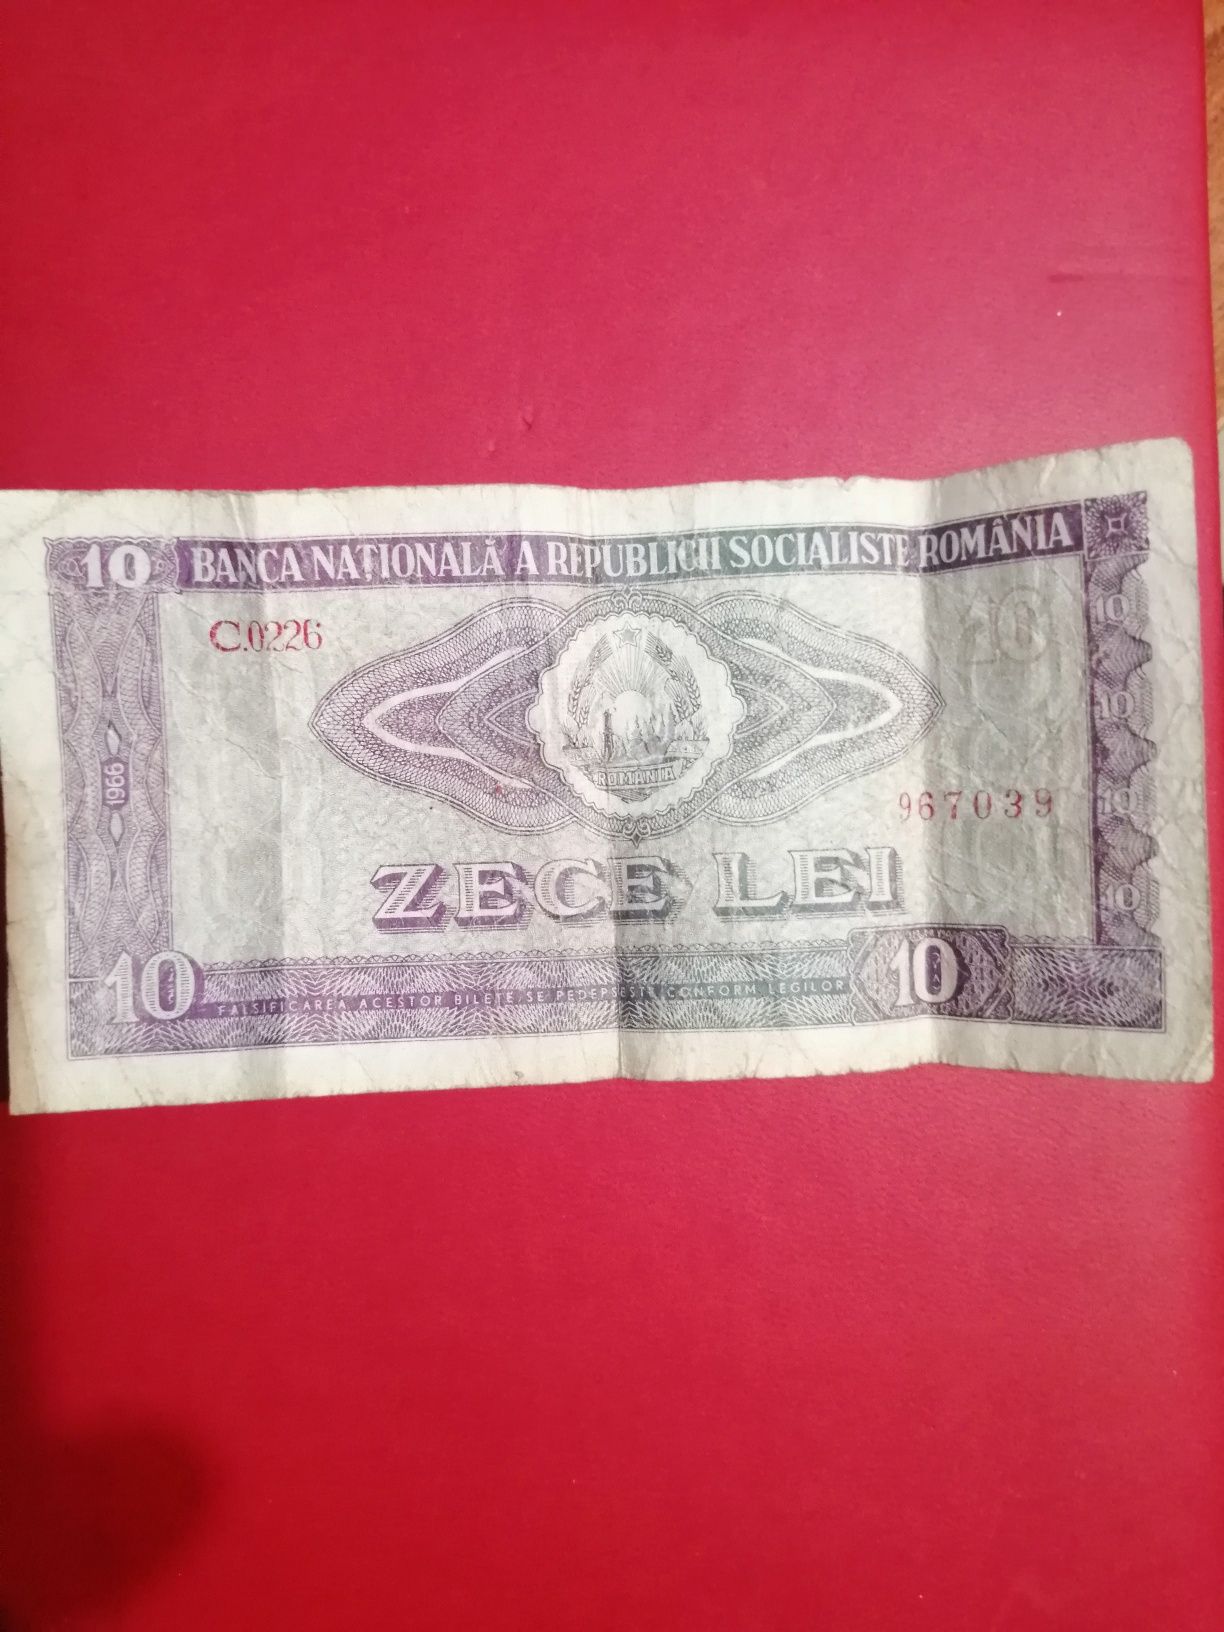 Bancnotă de 10 lei din anul 1966.